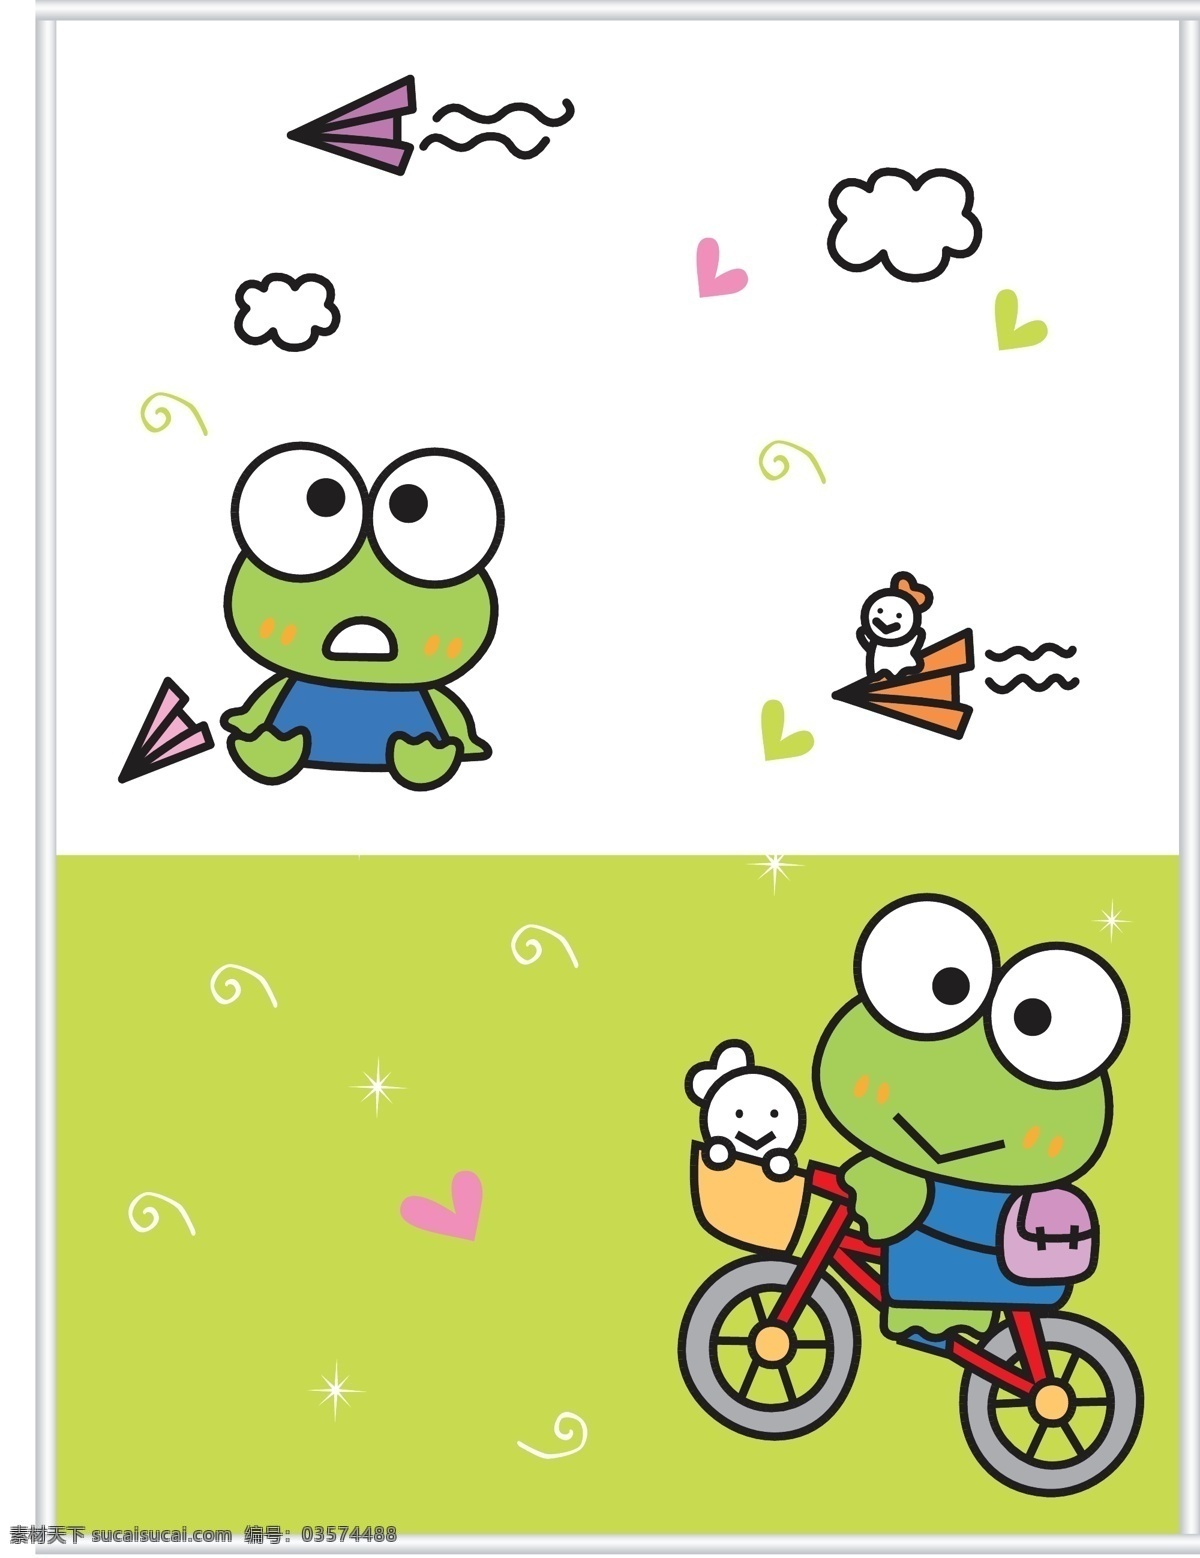 青蛙王子 背景 矢量 卡通 可爱 生物世界 两栖动物 单车 纸飞机 其他生物